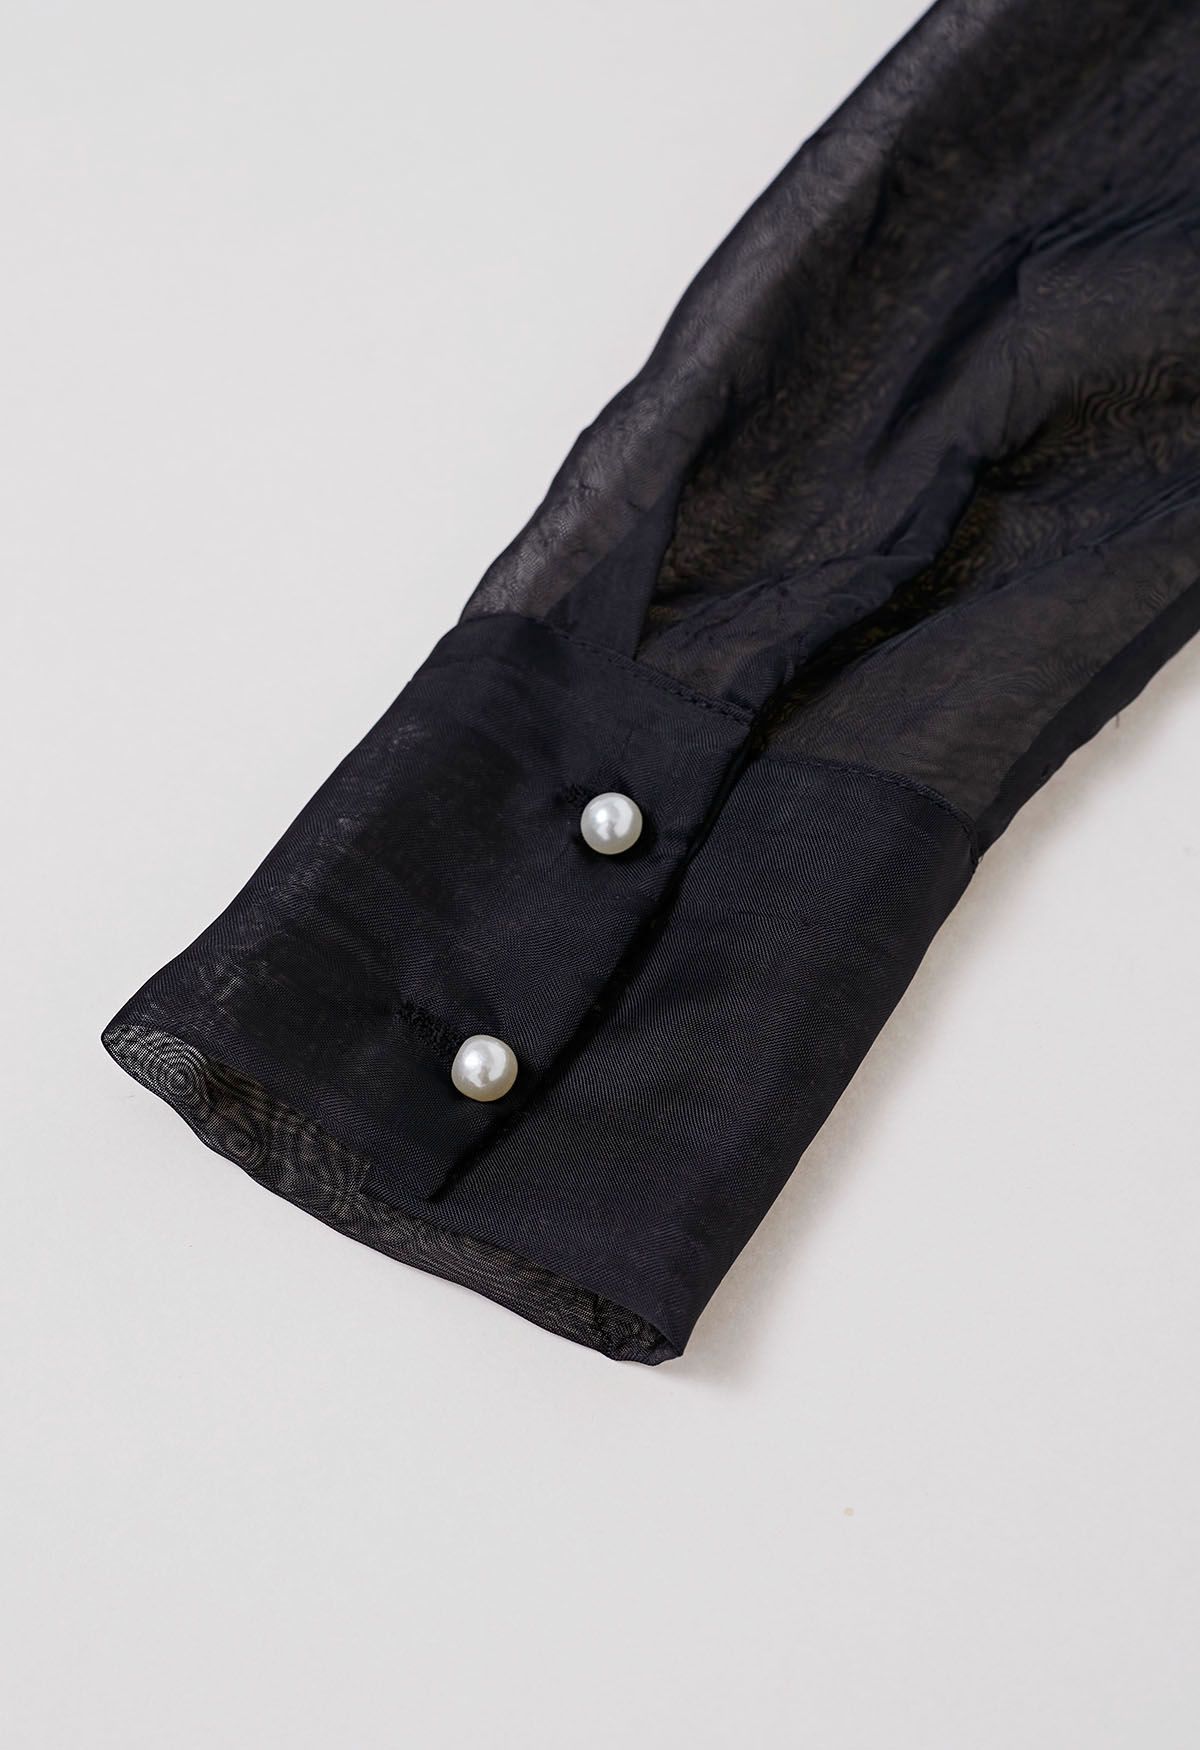 Rose Brooch Puff Sleeve Texture Sheer Top in Black